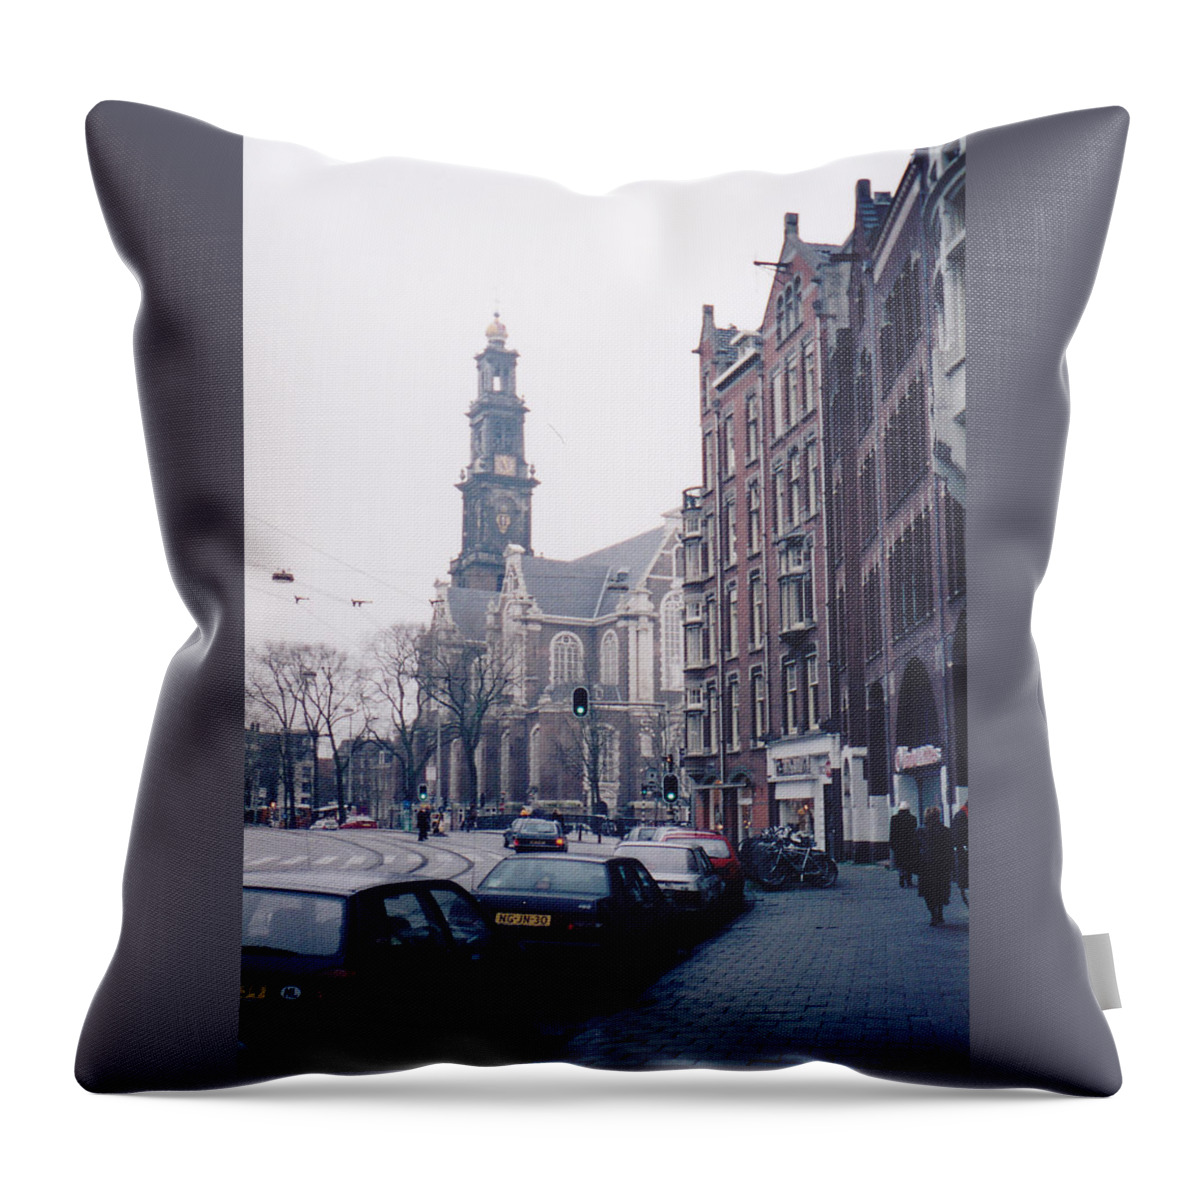 オランダの街並み Throw Pillow featuring the photograph Dutch streets by Yuko Akechi